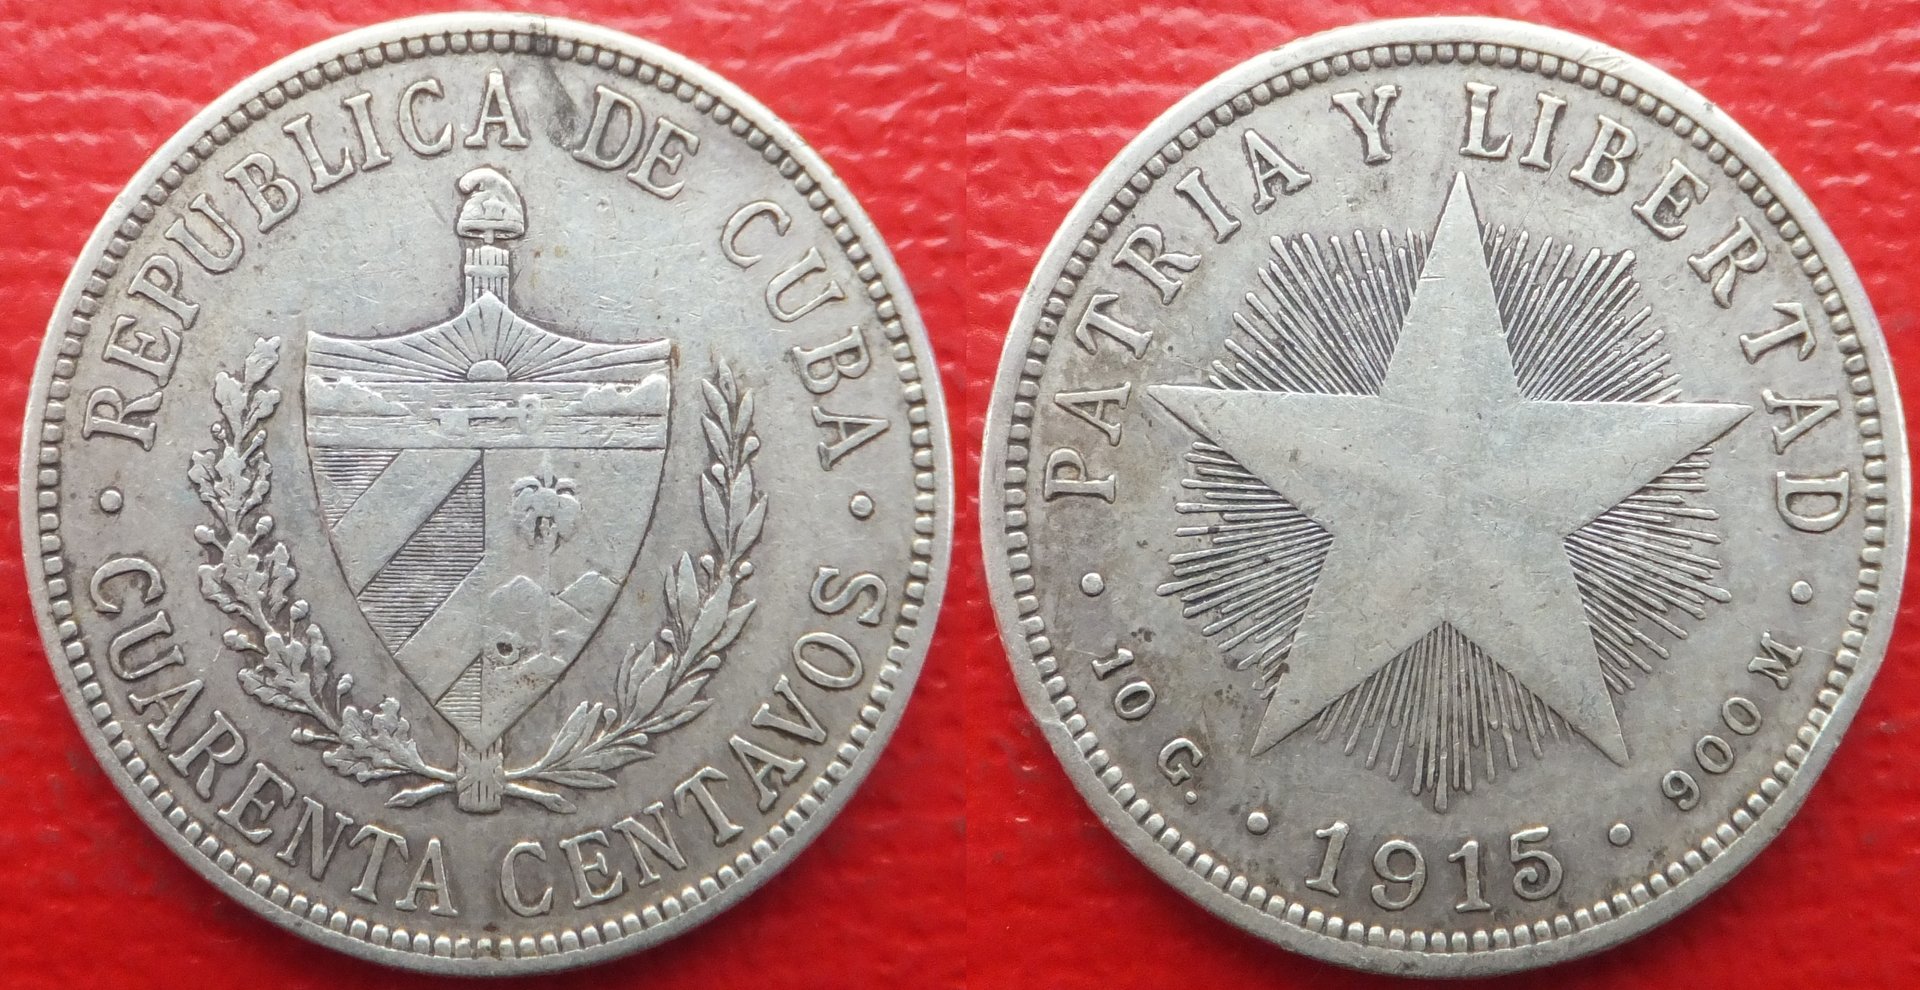 Cuba 40 centavos 1915 (3).jpg